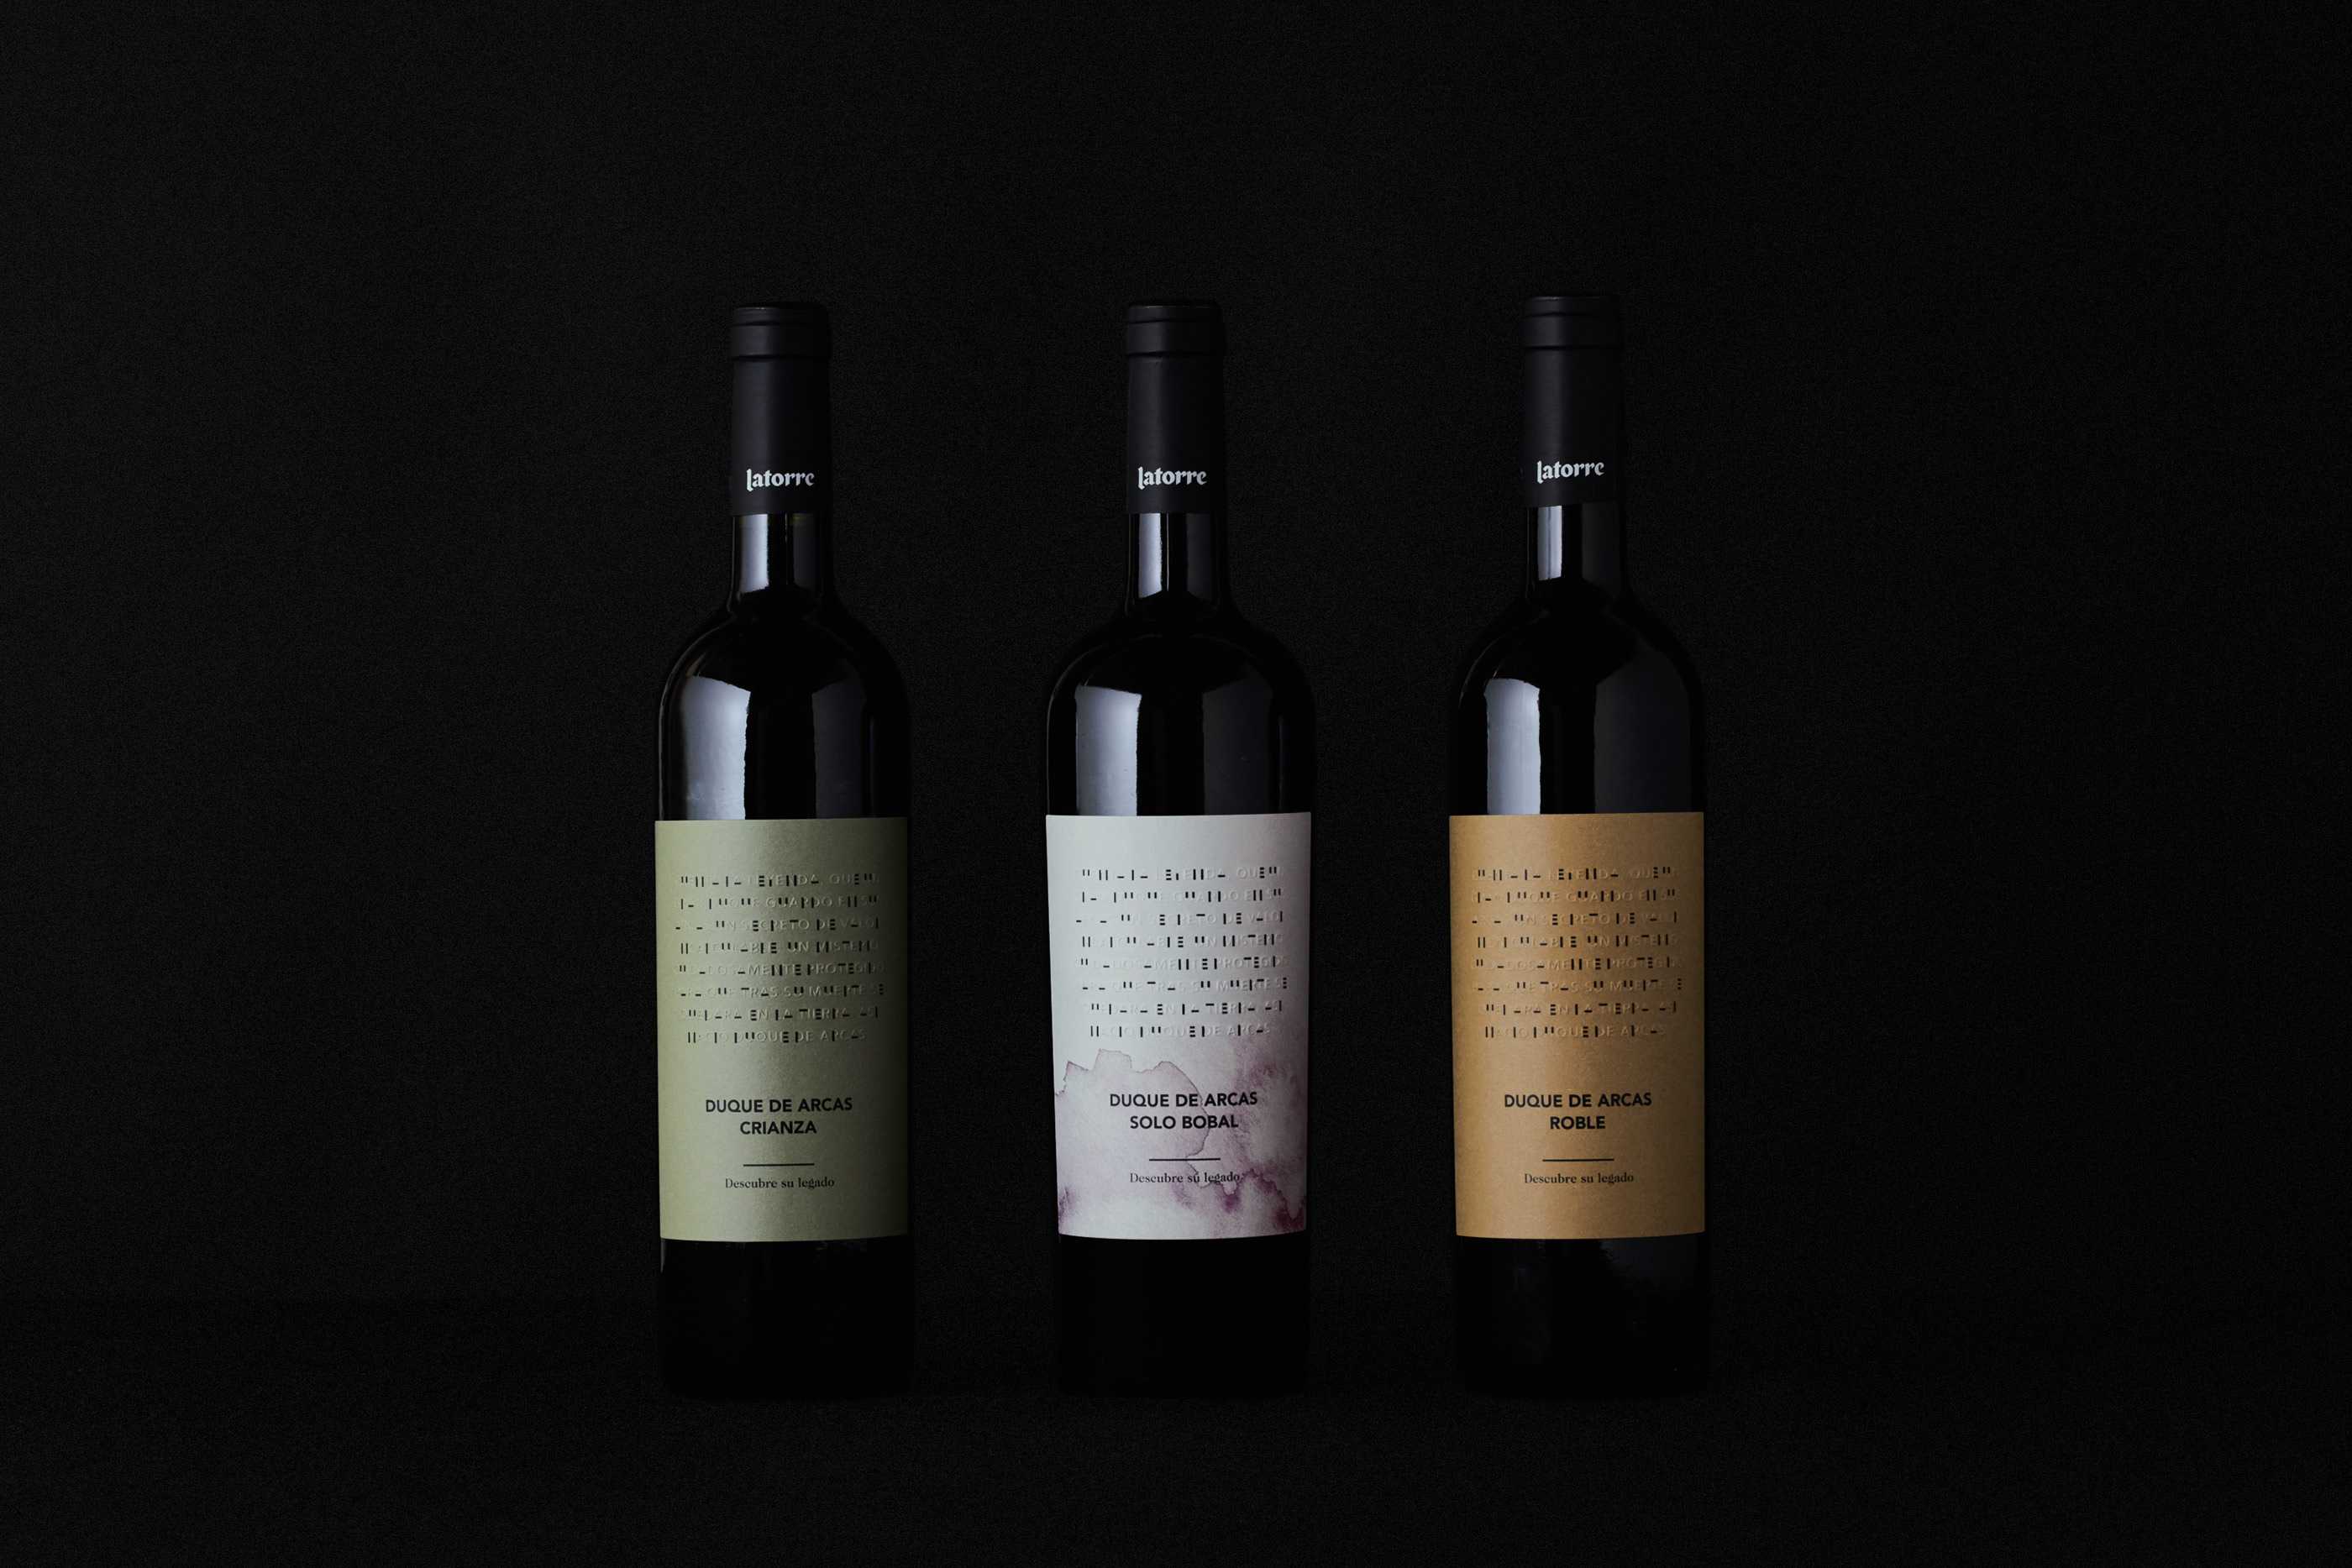 Diseño de etiquetas para familia de vinos duque de arcas